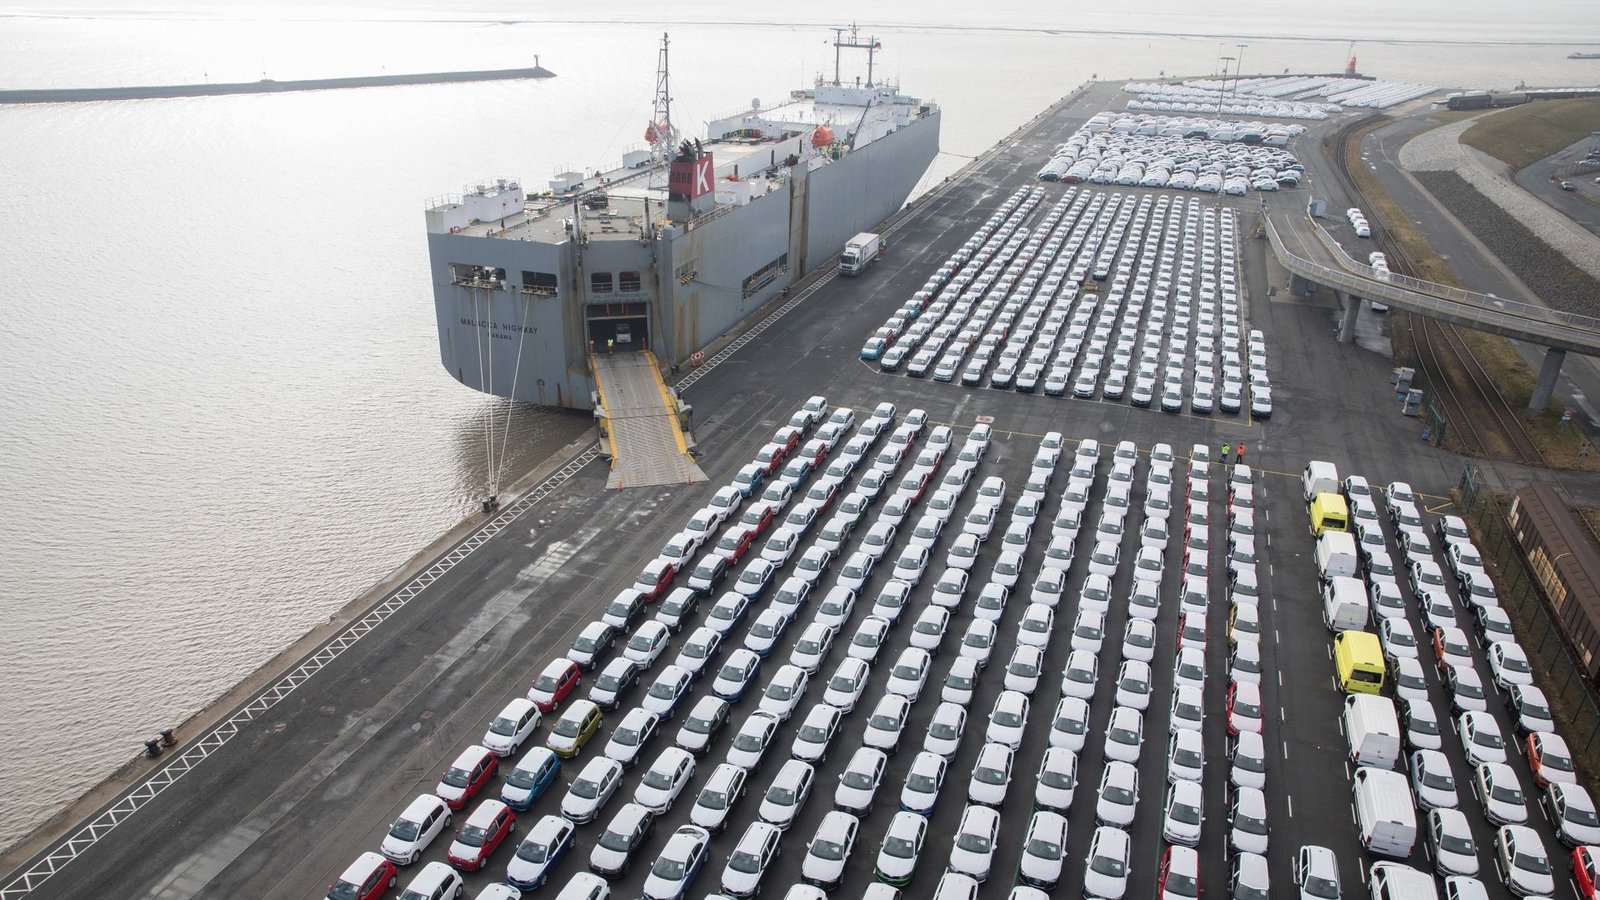 Fahrzeuge des Volkswagen Konzerns stehen im Hafen von Emden zur Verschiffung bereit. Volkswirte haben Deutschland als Wirtschaftsstandort ein schlechtes Zeugnis ausgestellt (Symbolbild).Foto: Jörg Sarbach/dpa